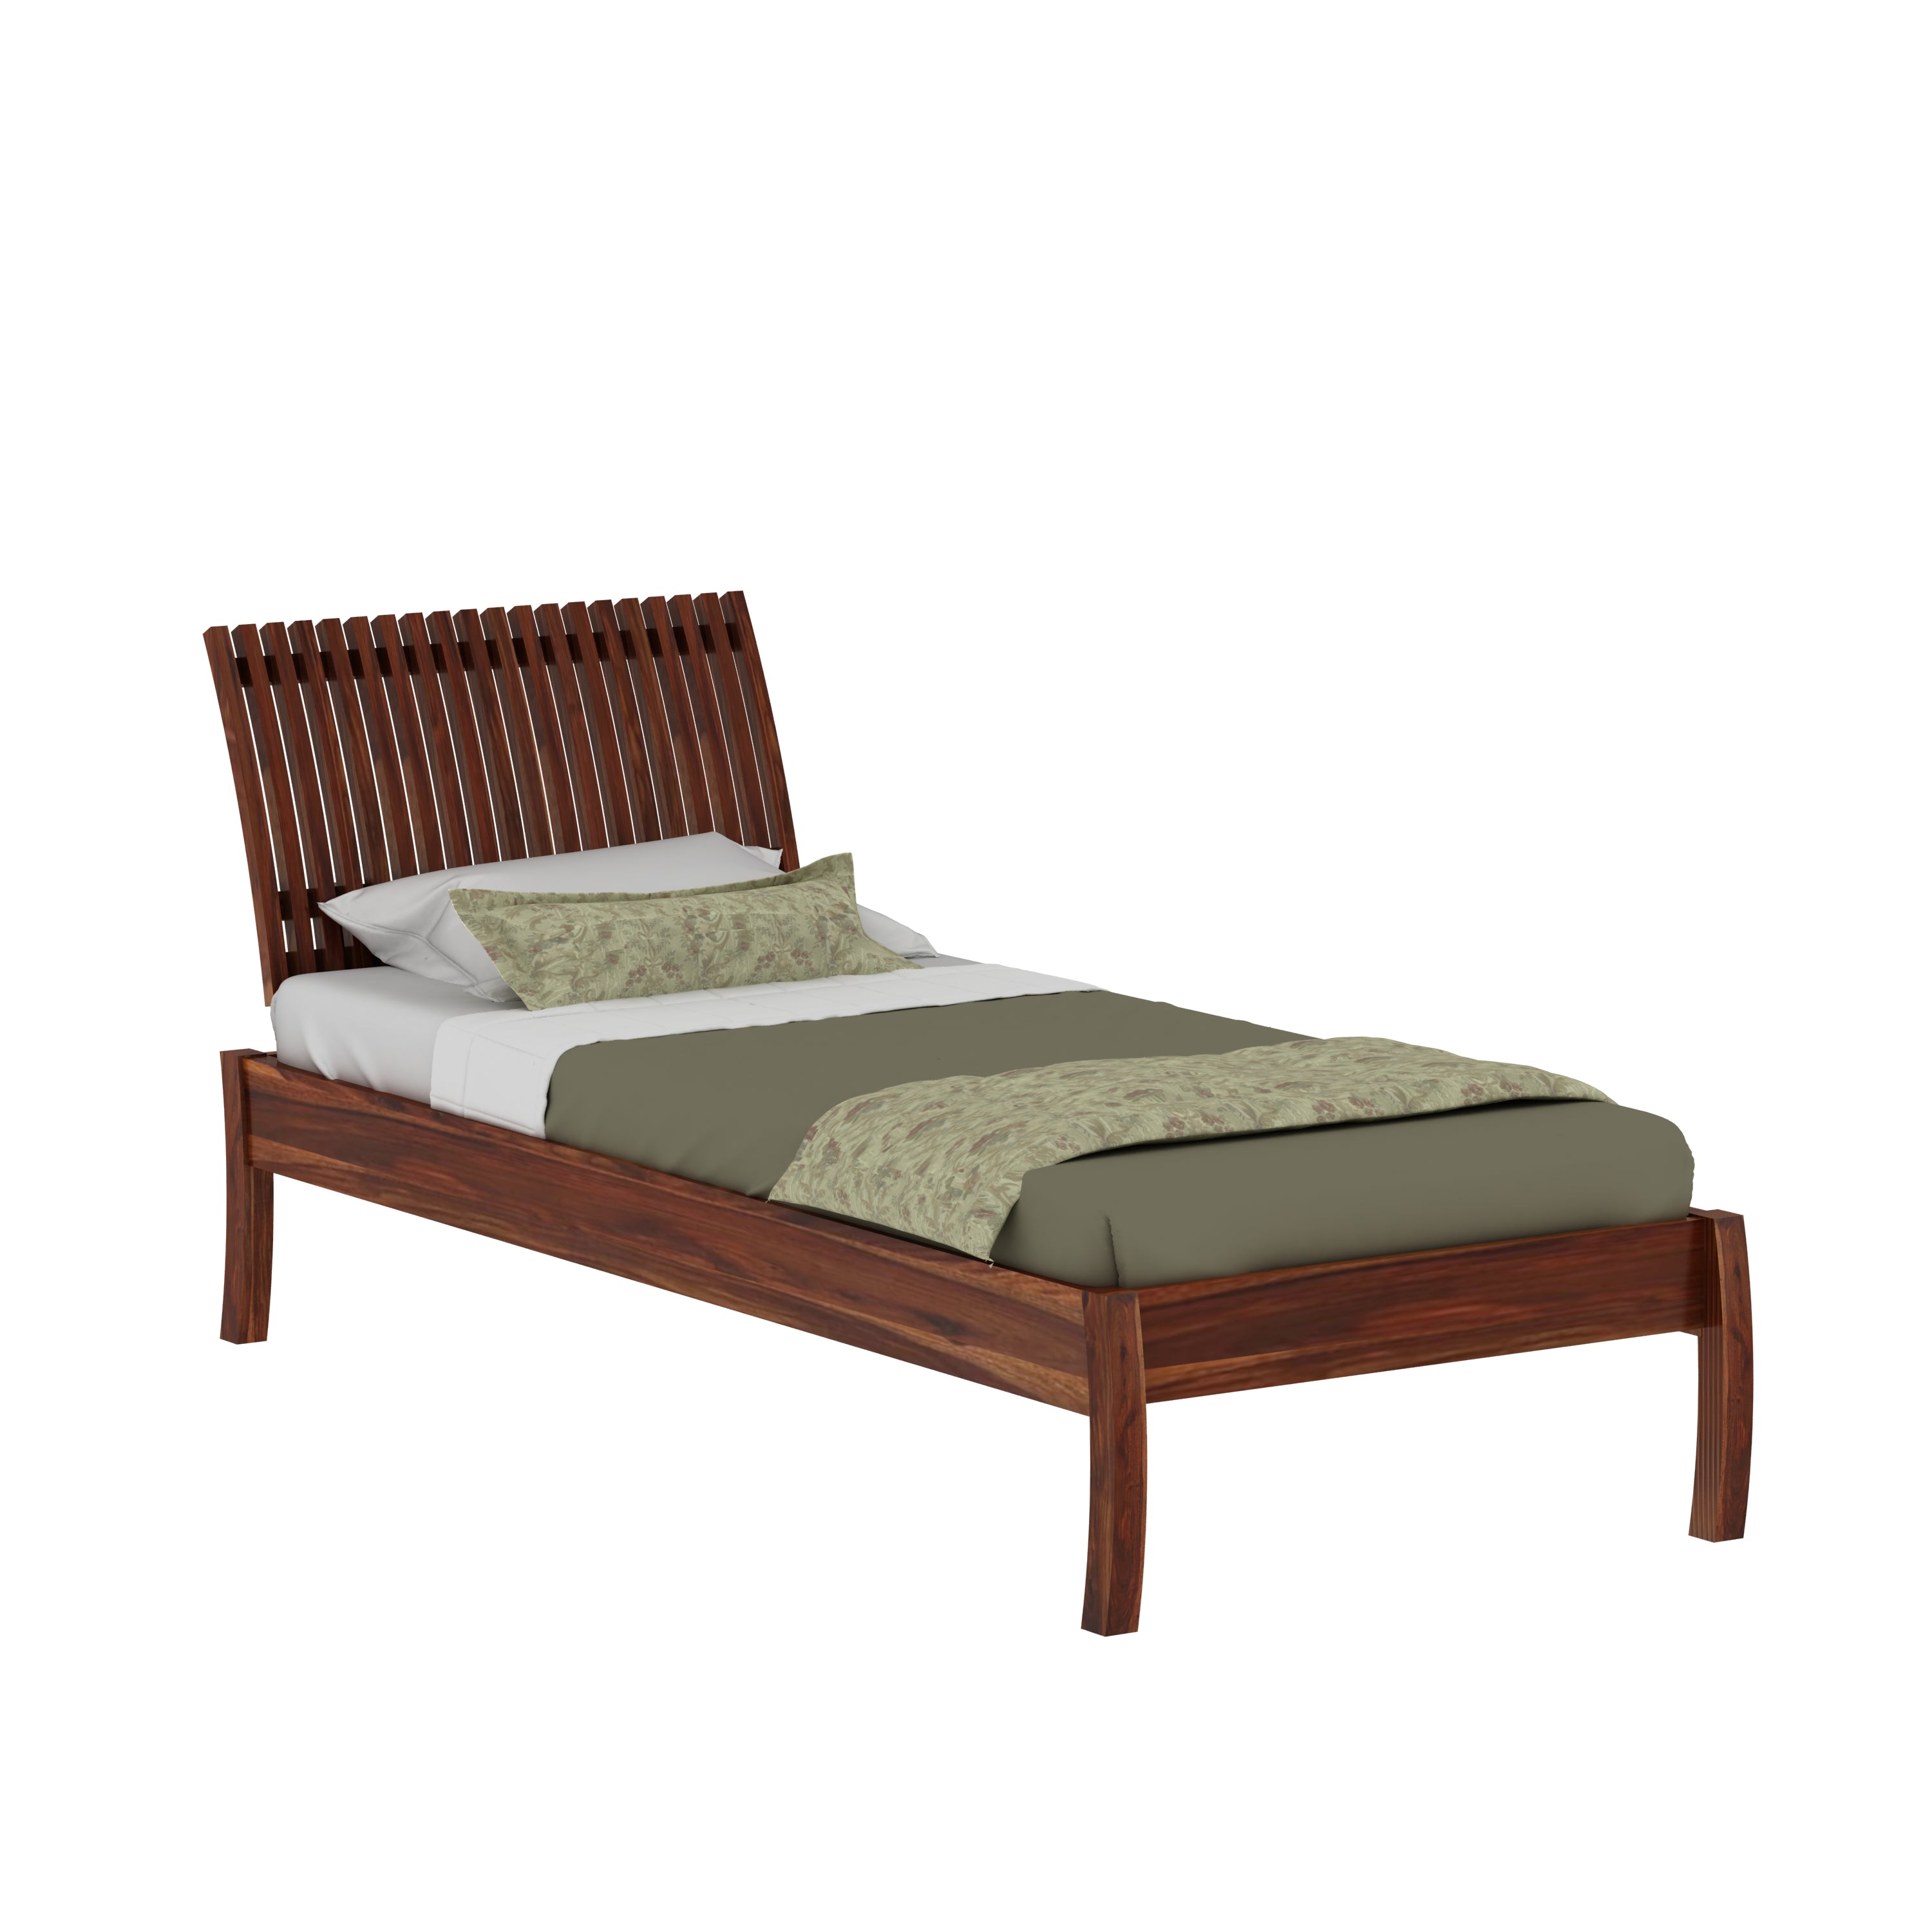 Dumdum Solid Sheesham Wood Single Bed Without Storage (Natural Finish)